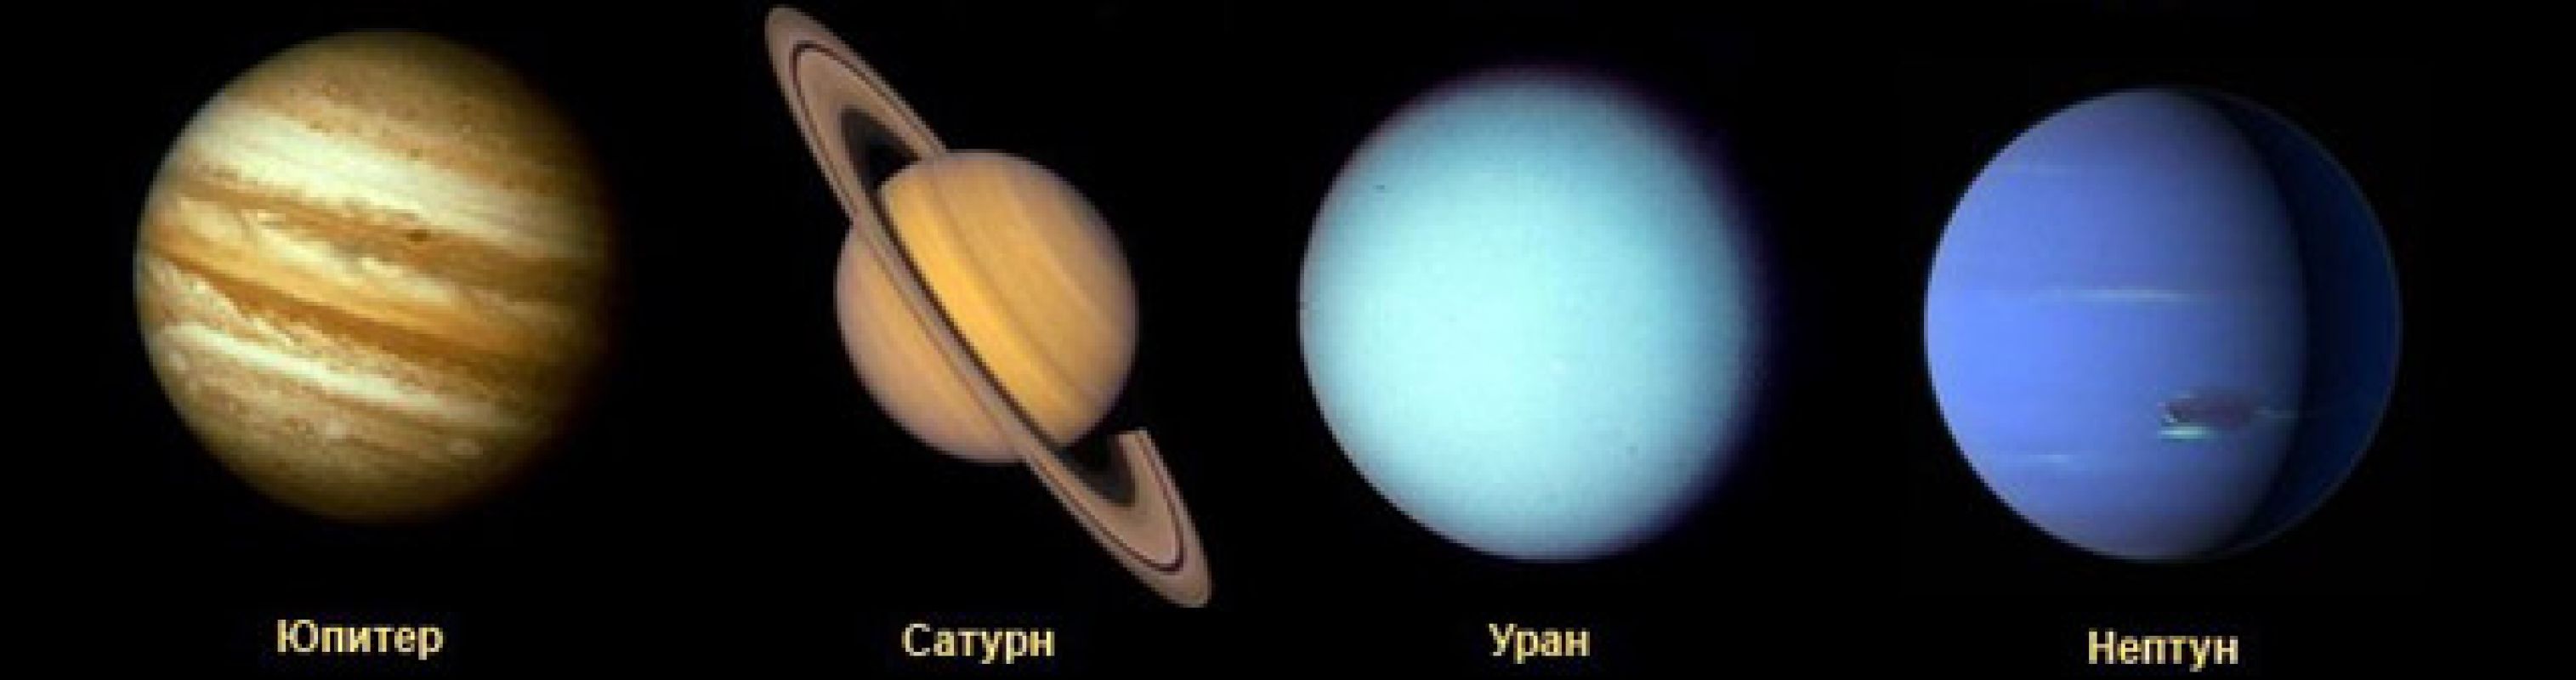 Как формировались планеты Солнечной системы